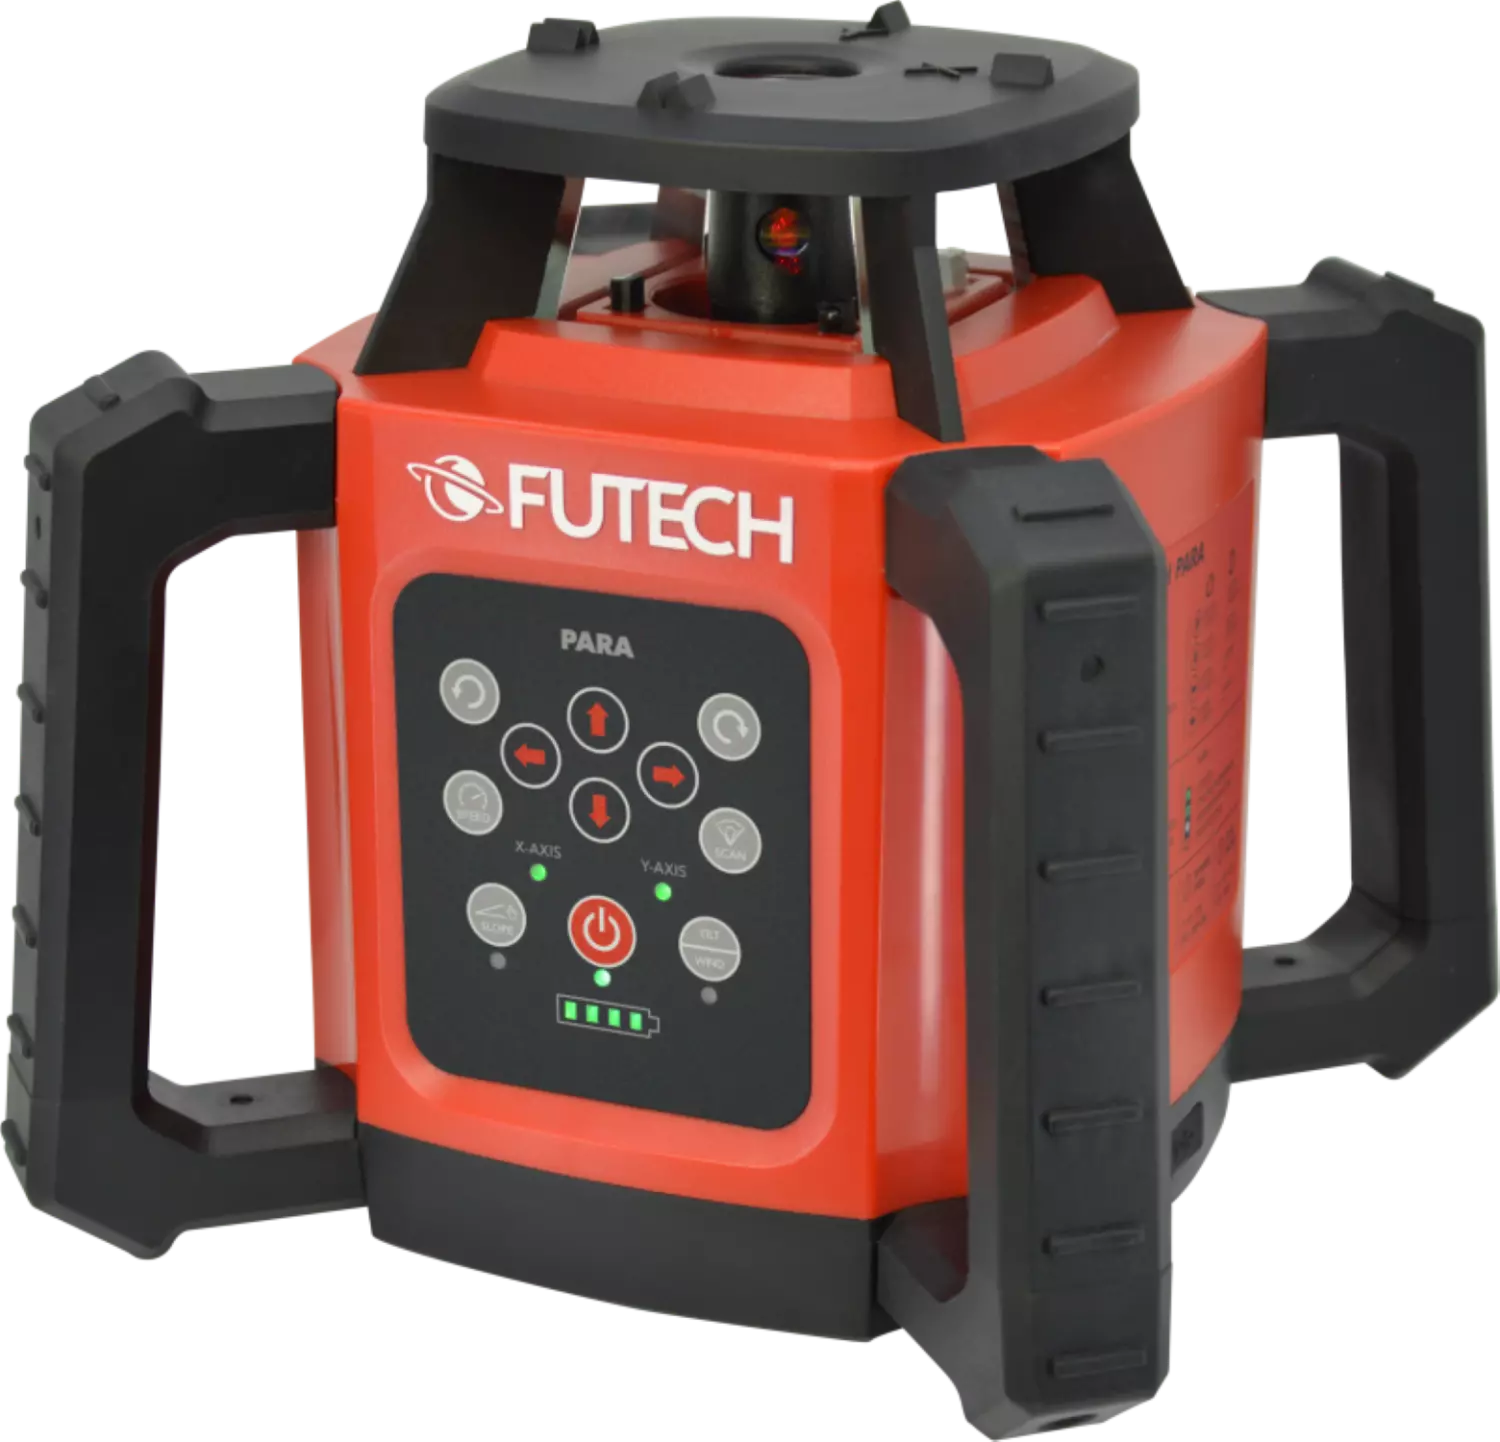 FUTECH Para ONE laser rouge rotatif + récepteur Para en étui - 2x300m-image